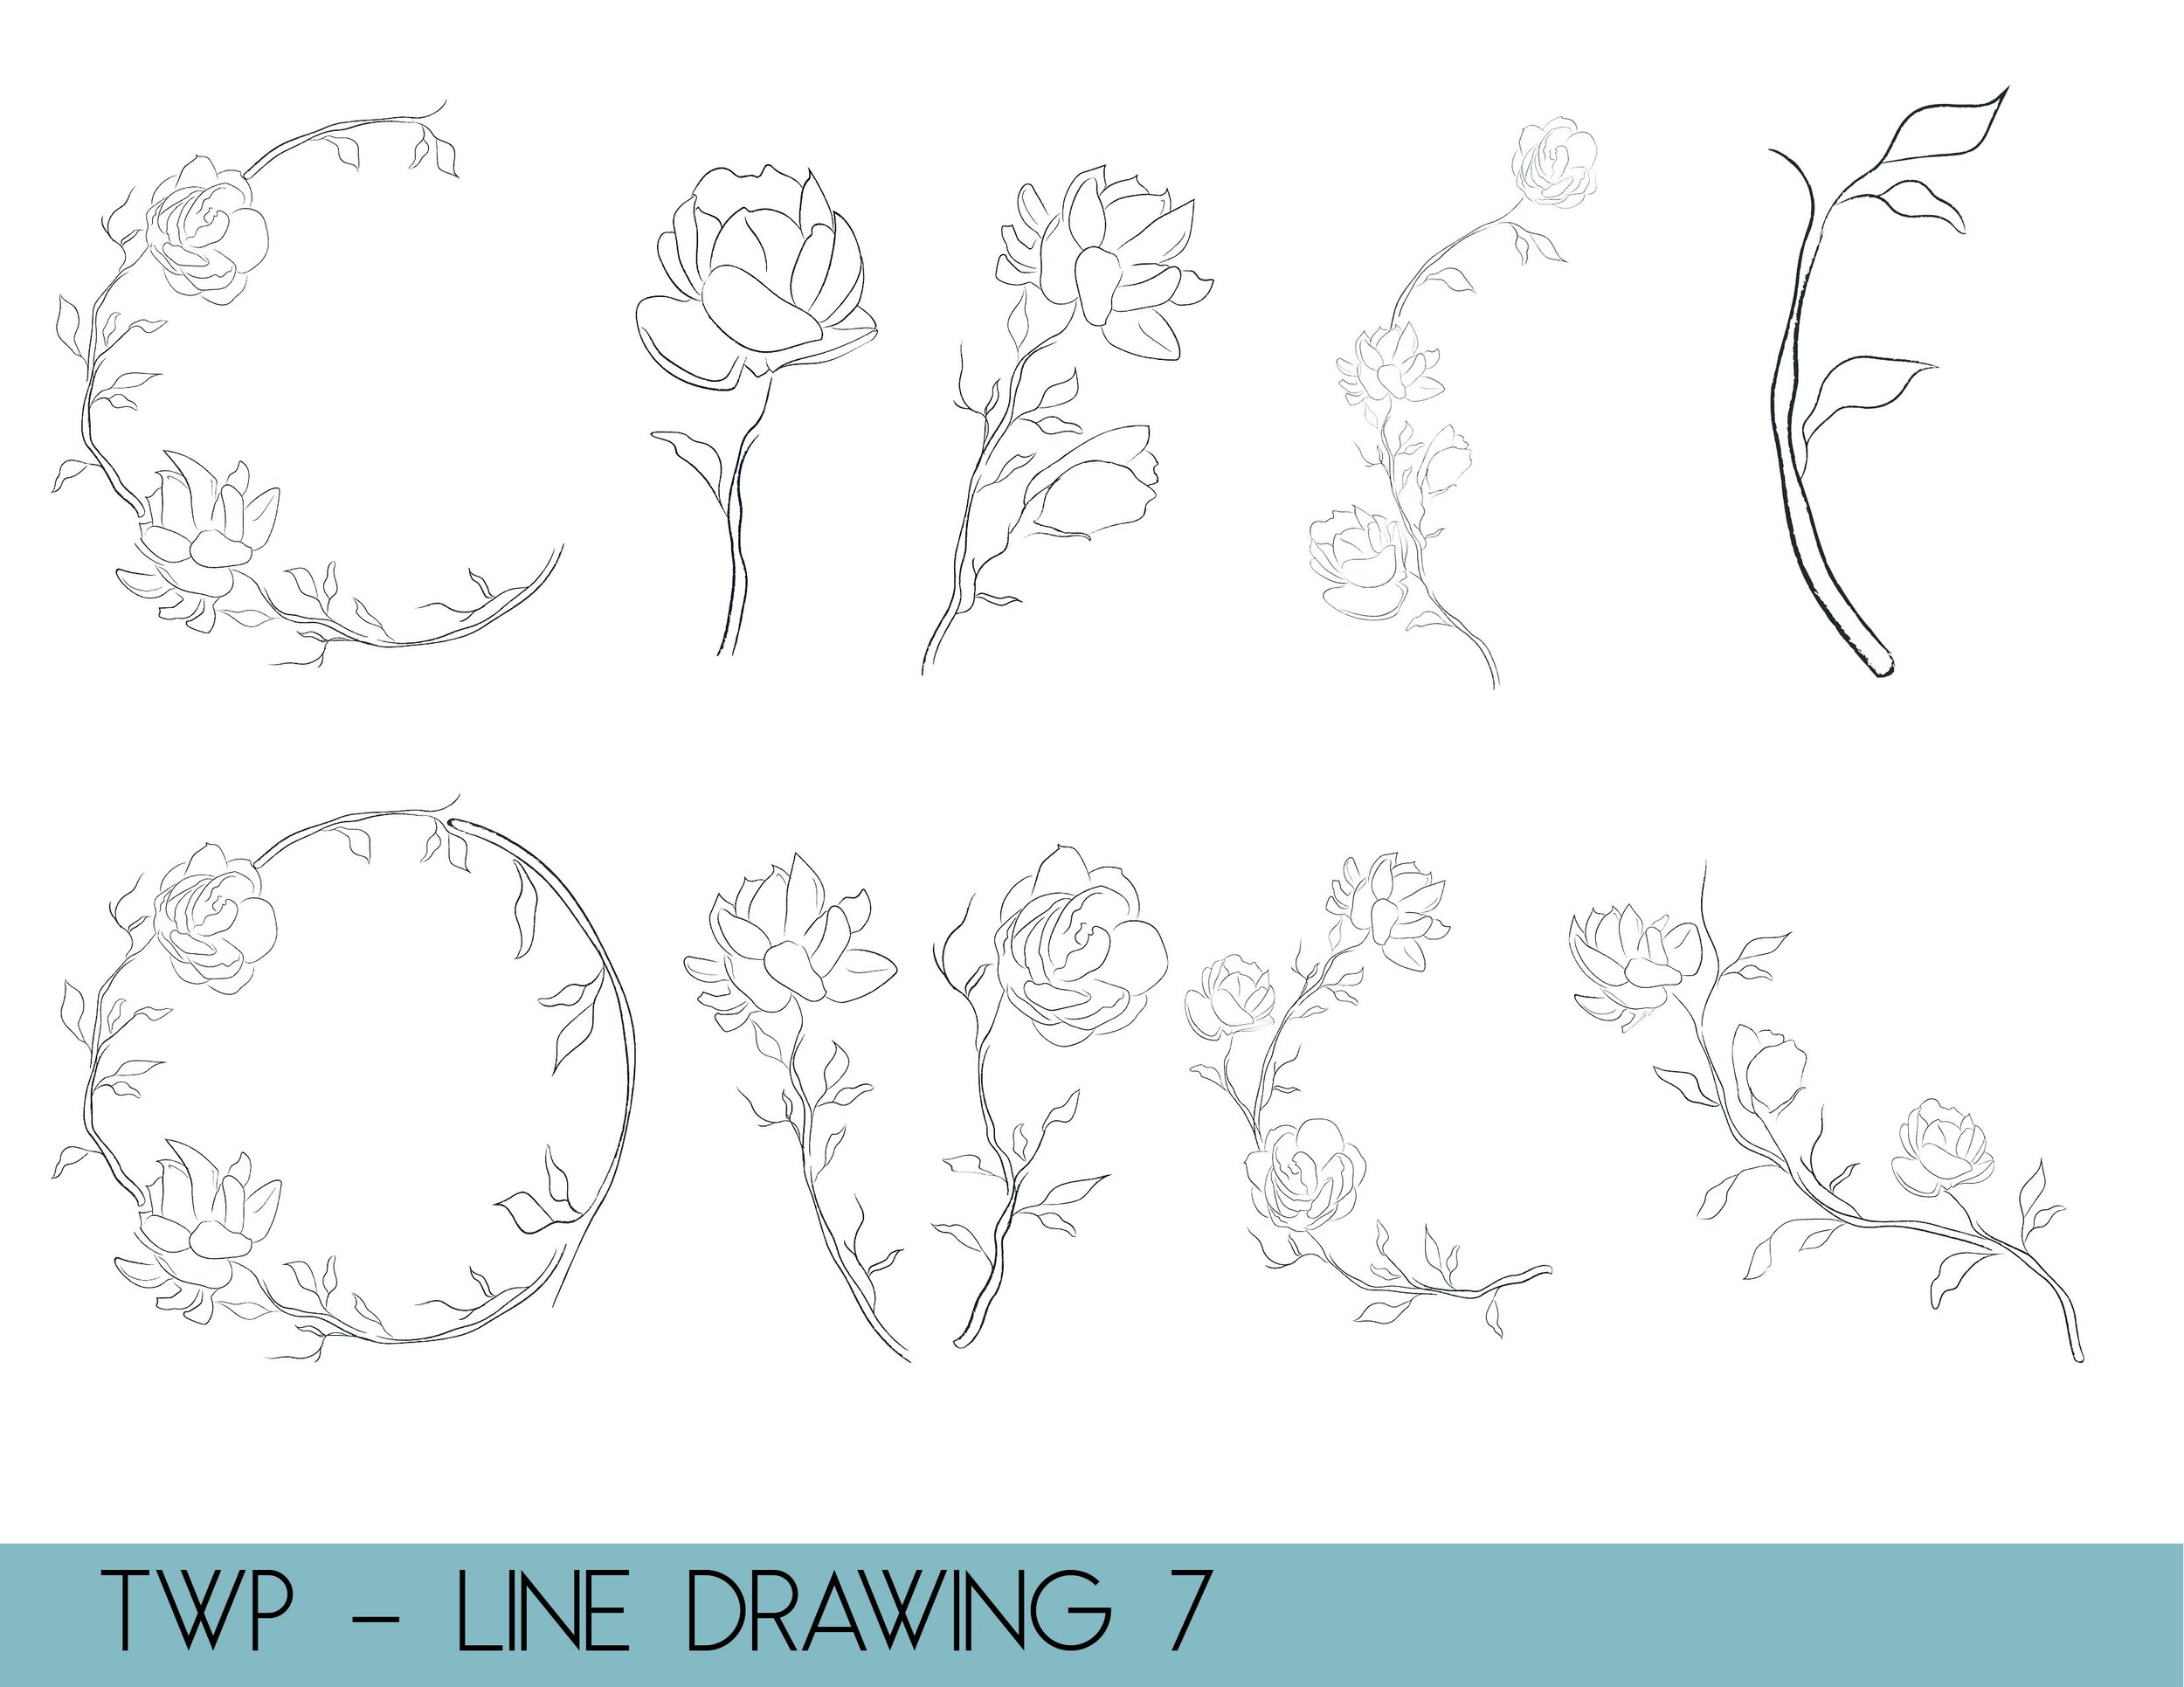 line drawings - website7.jpg